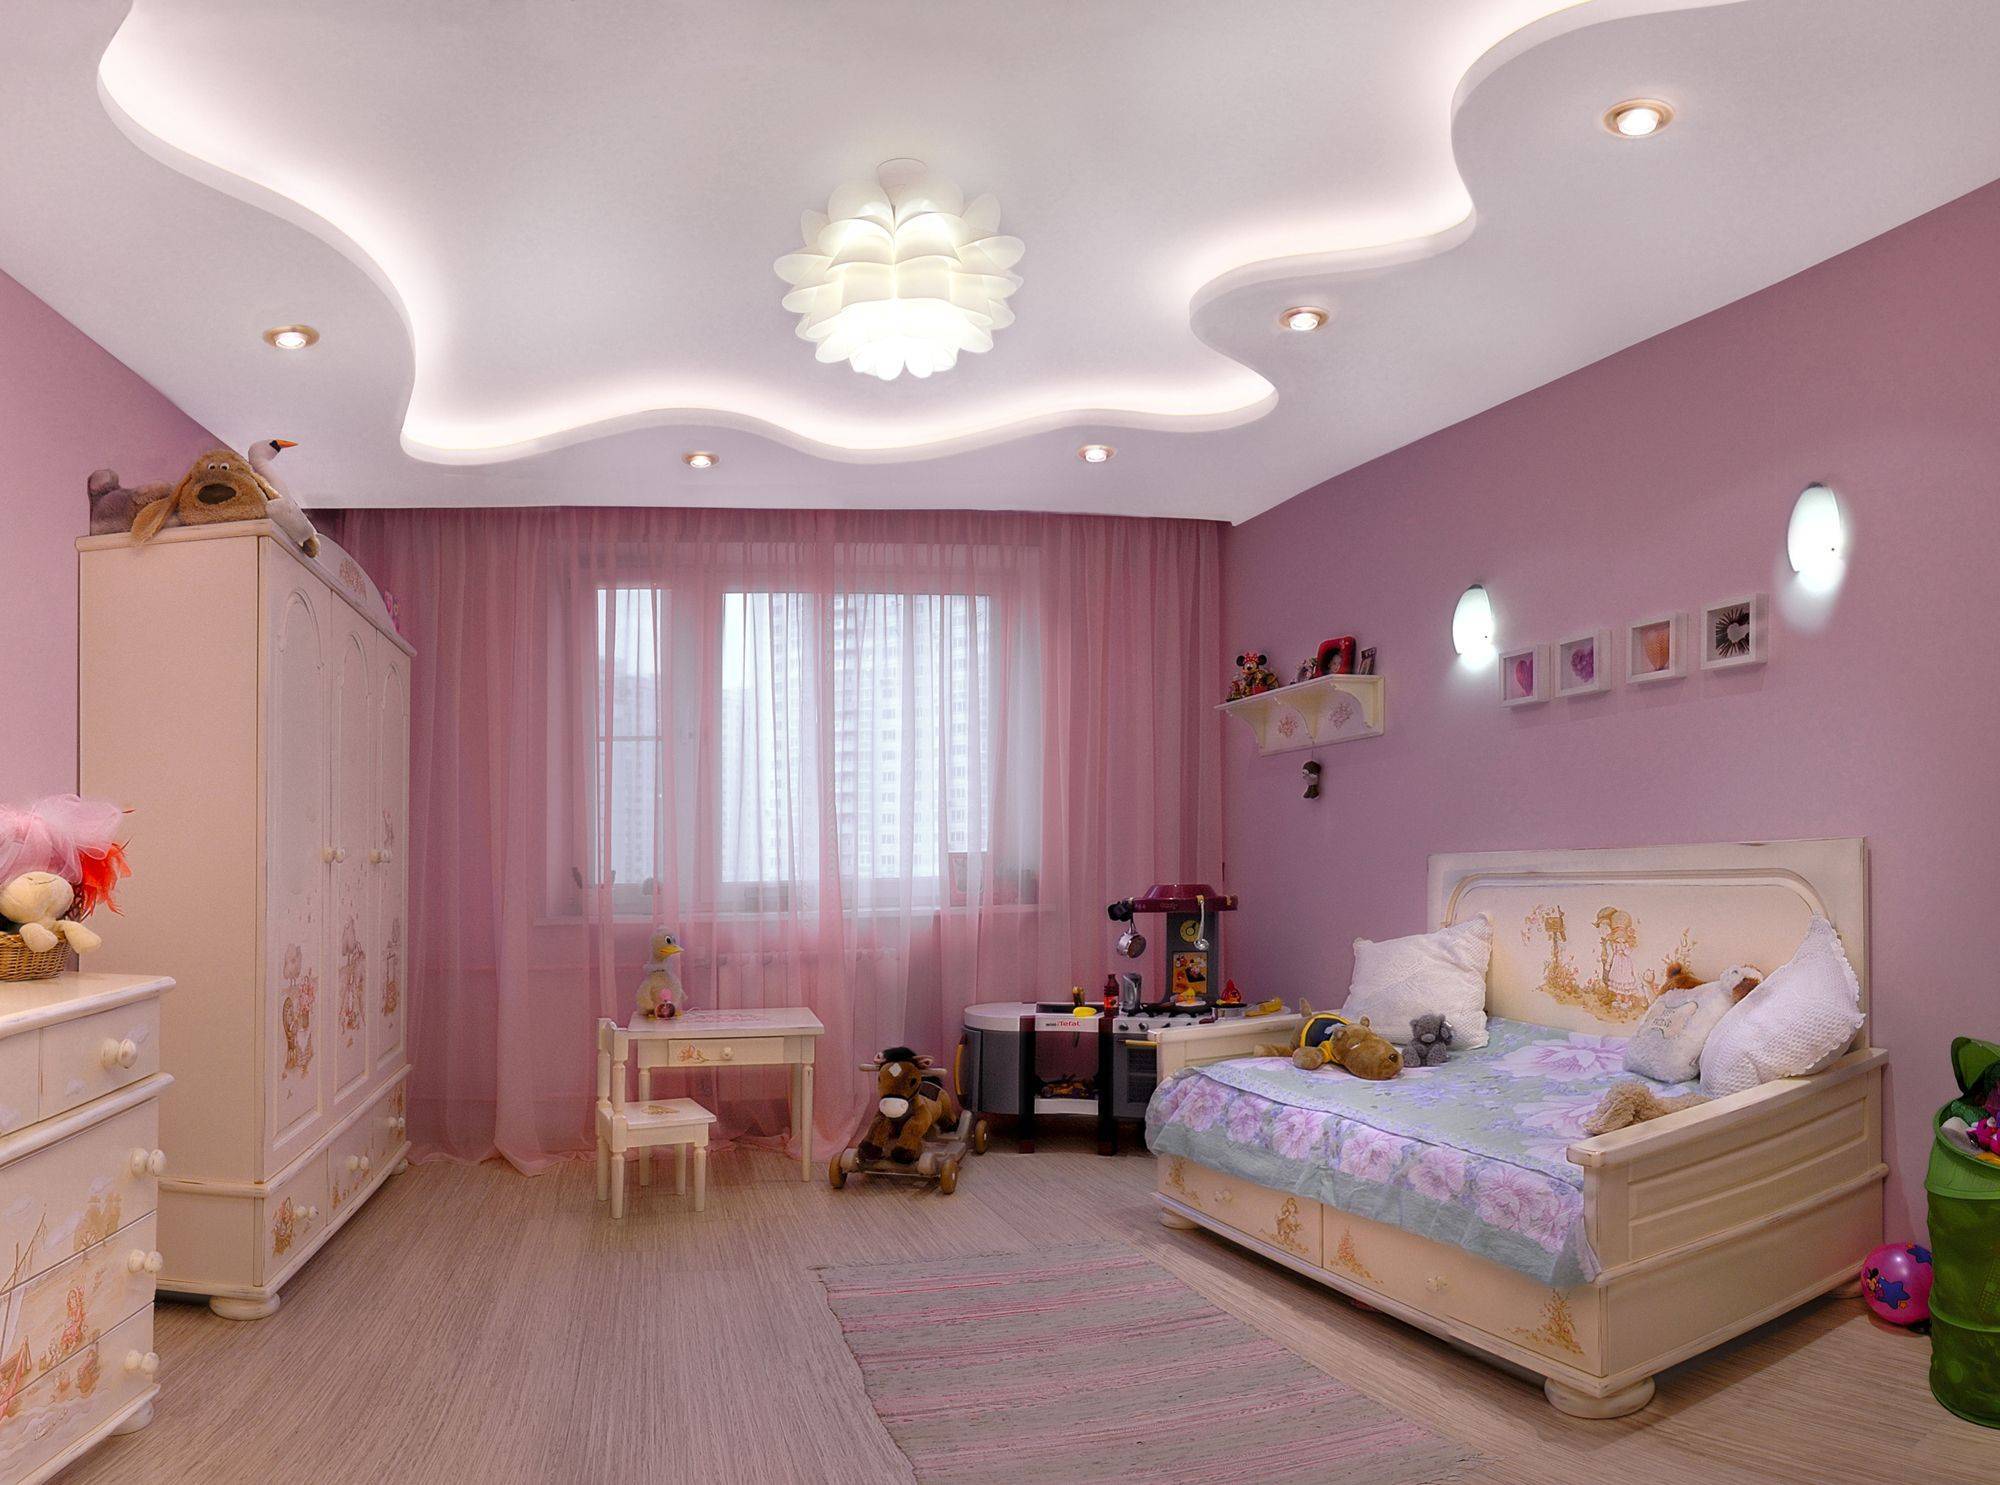 Потолок из гипсокартона: фото спальни и детской, с подсветкой подвесные и дизайн комнаты